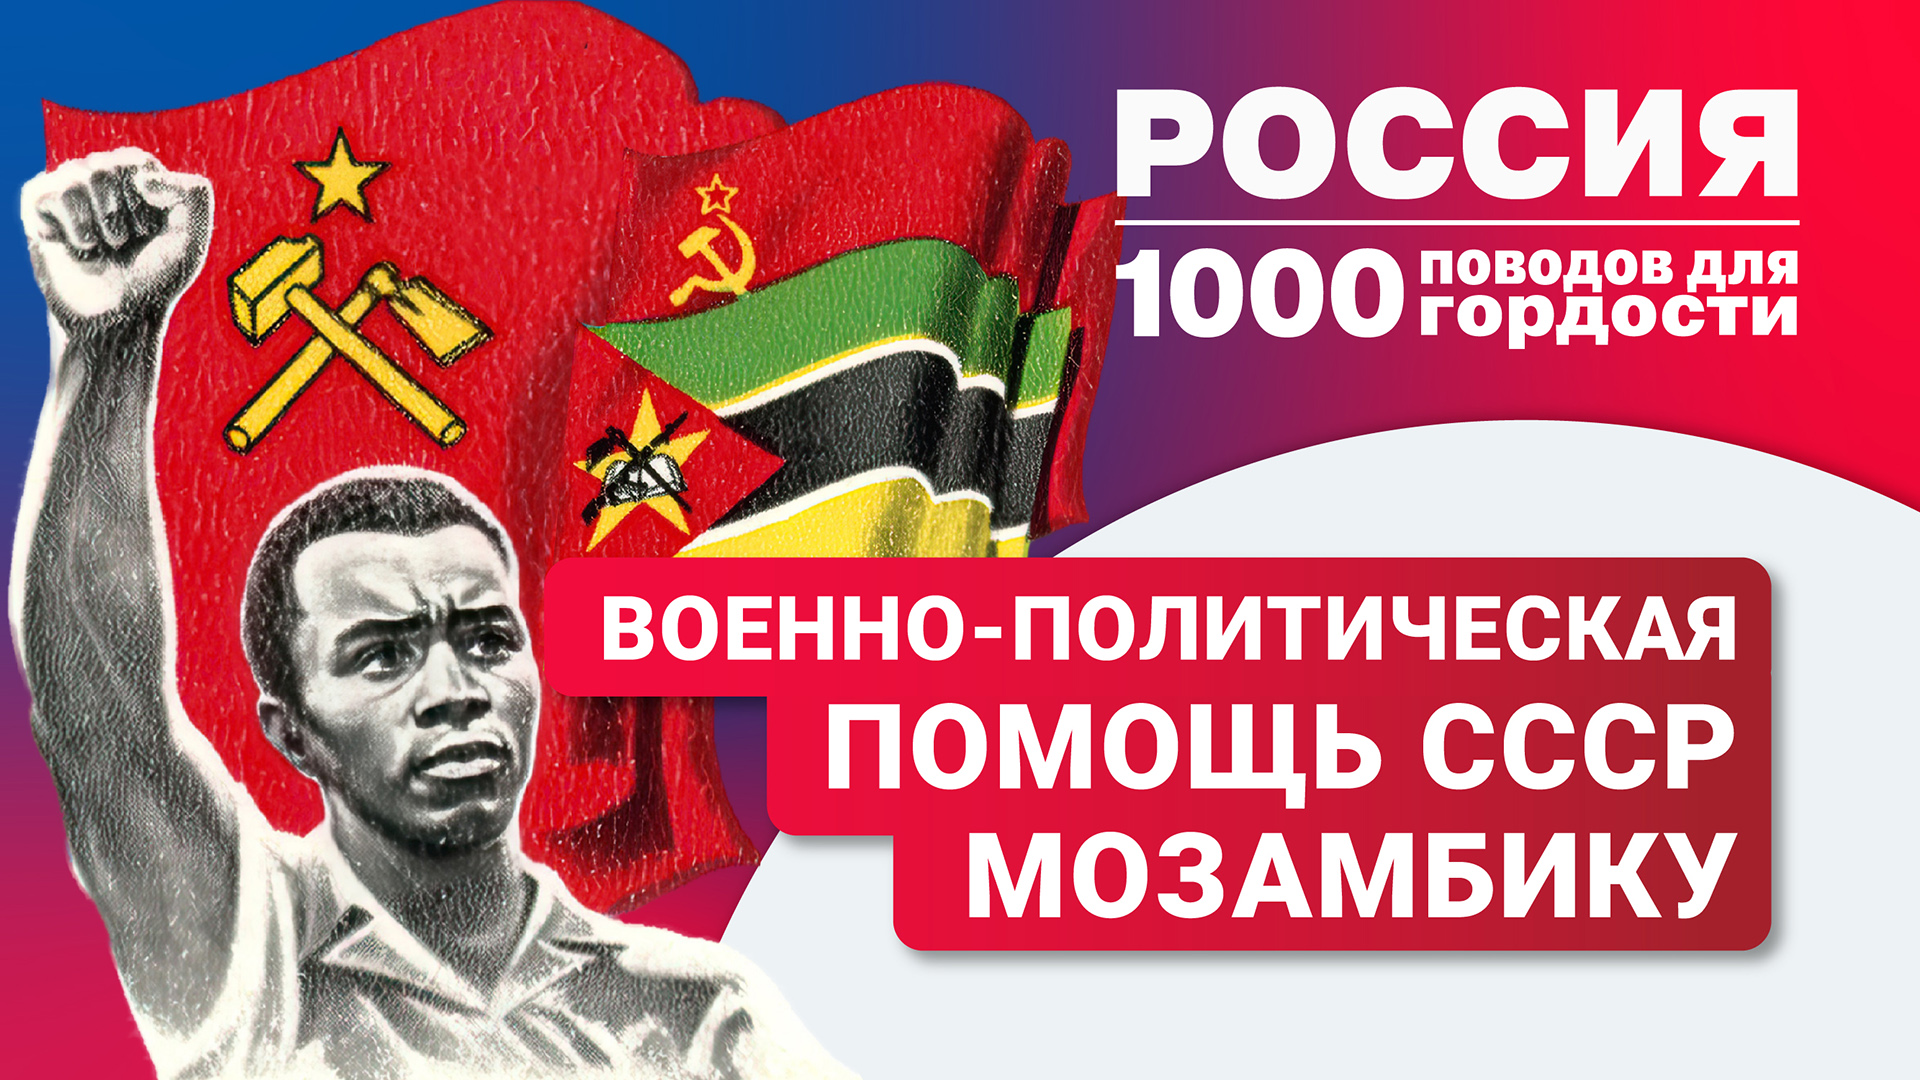 Военно-политическая помощь СССР Мозамбику